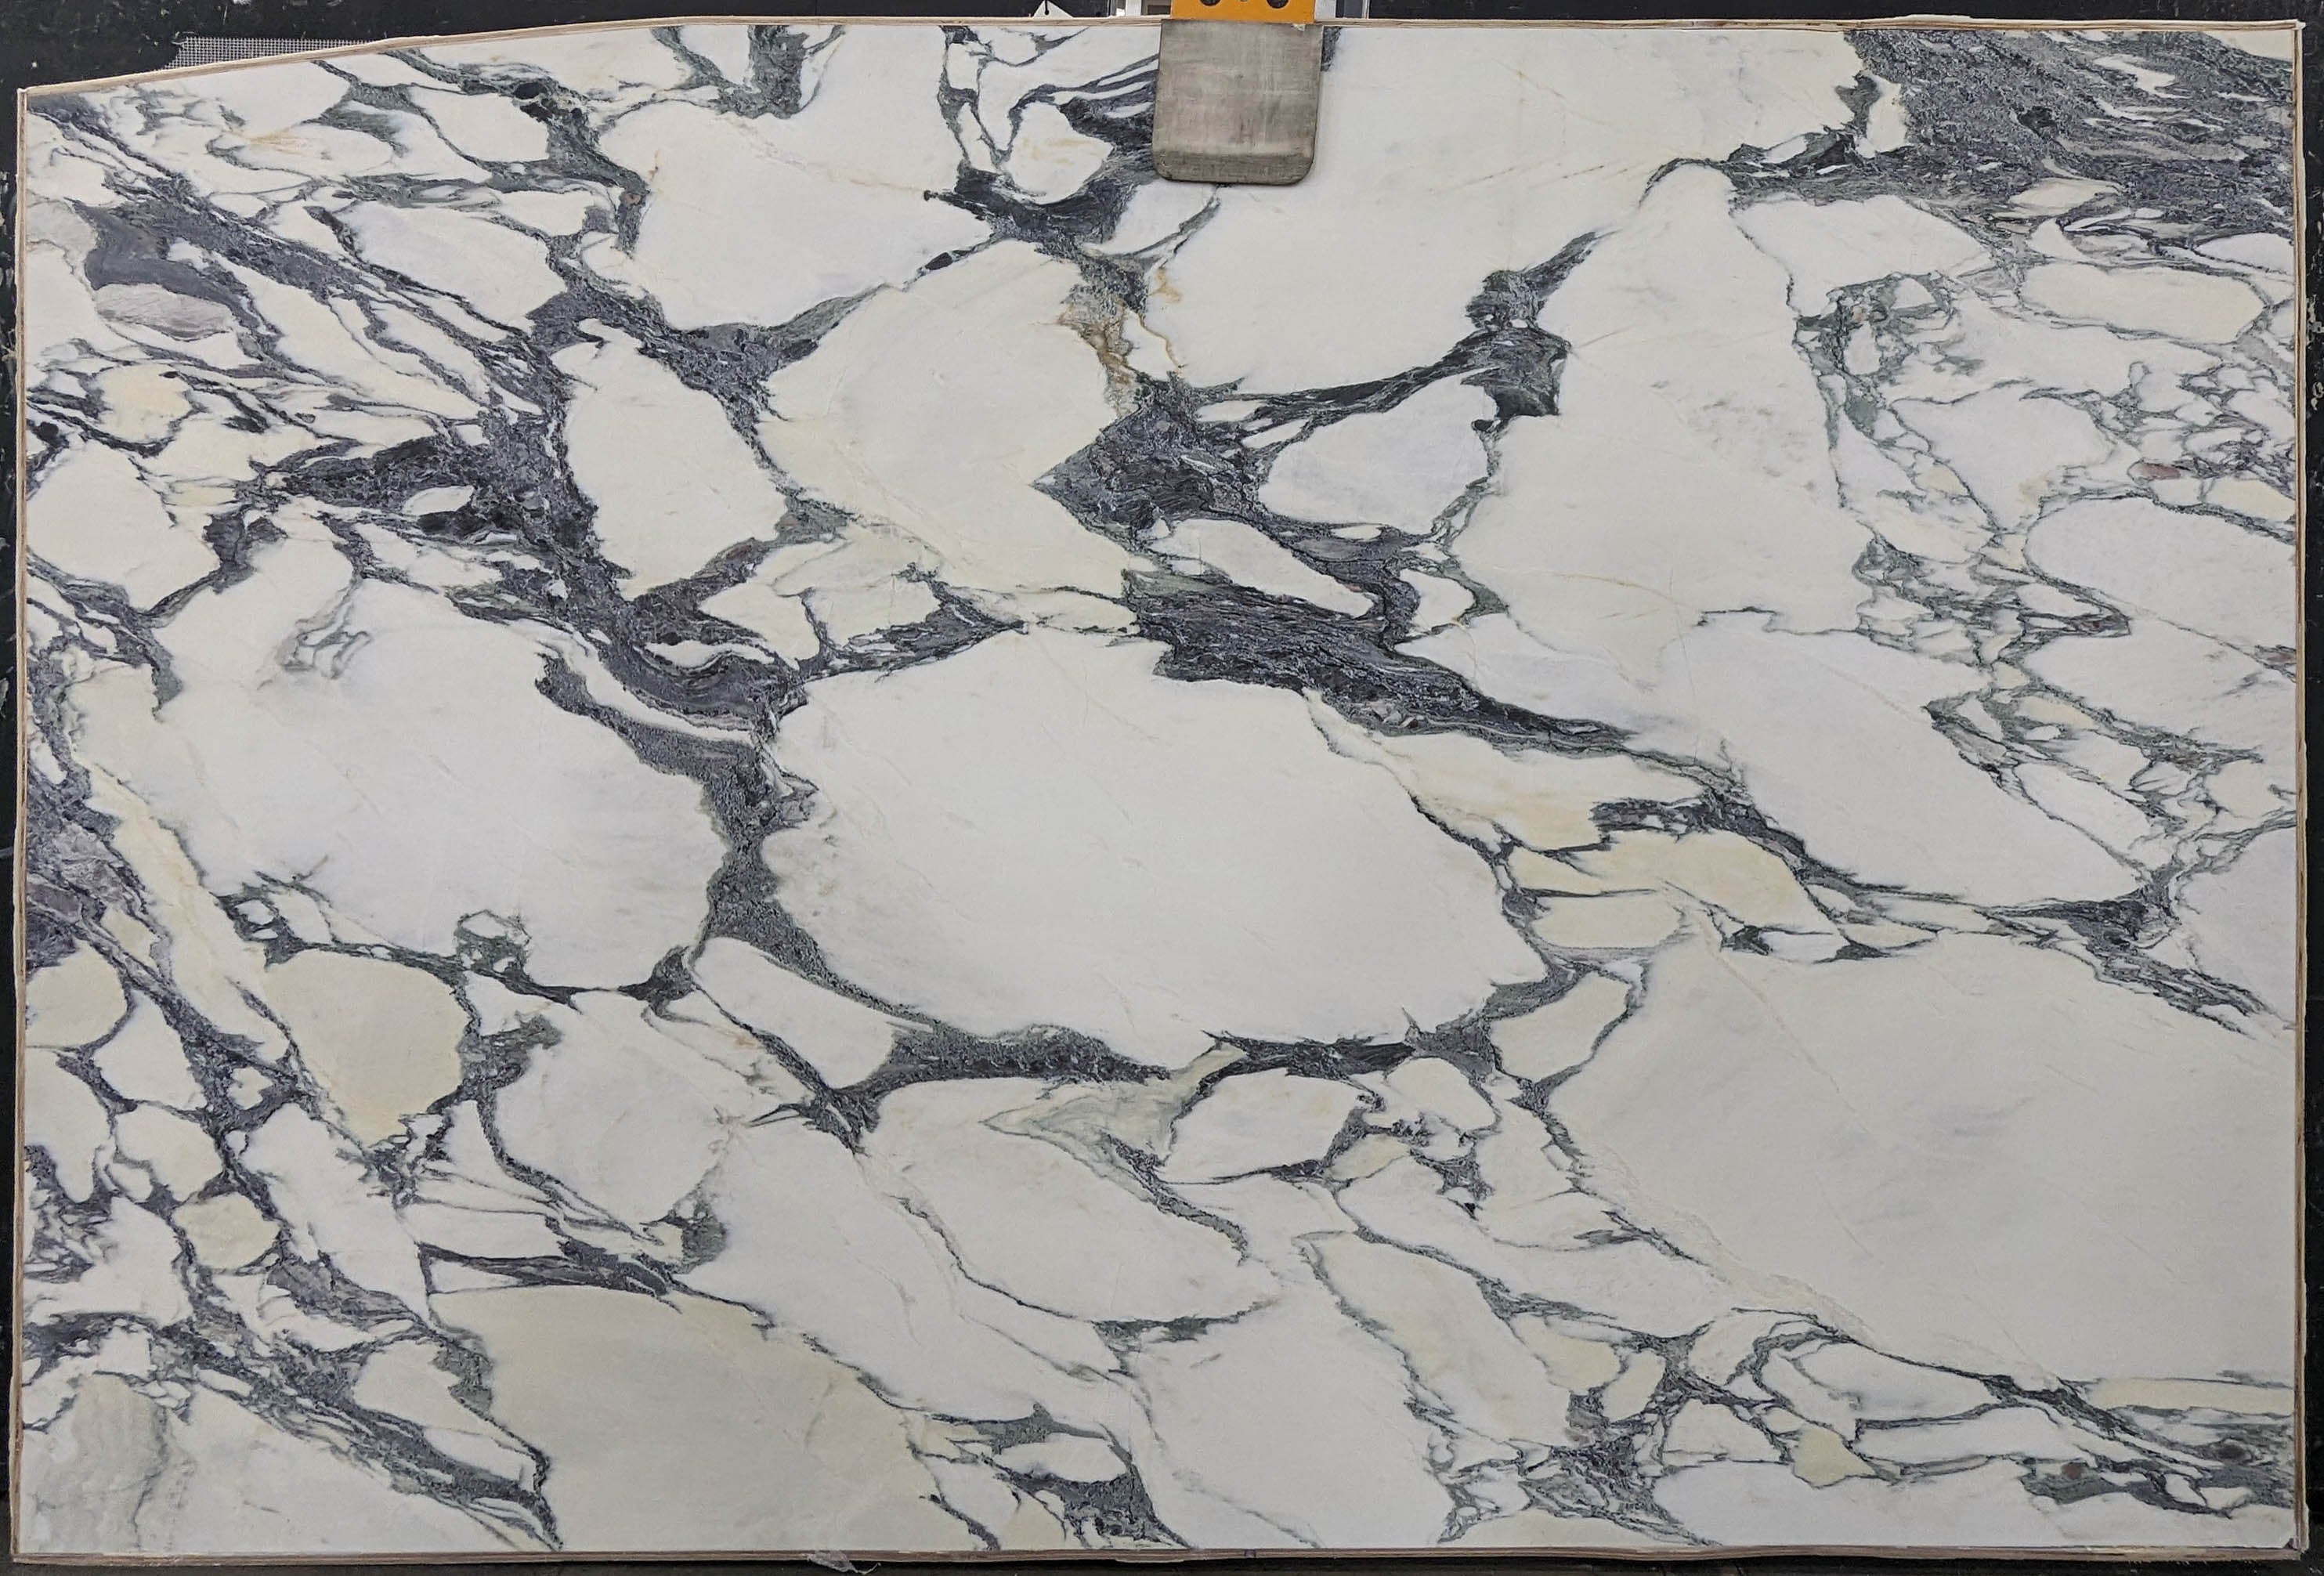  Calacatta Viola Marble Slab 3/4 - 13737A#50 -  74x116 